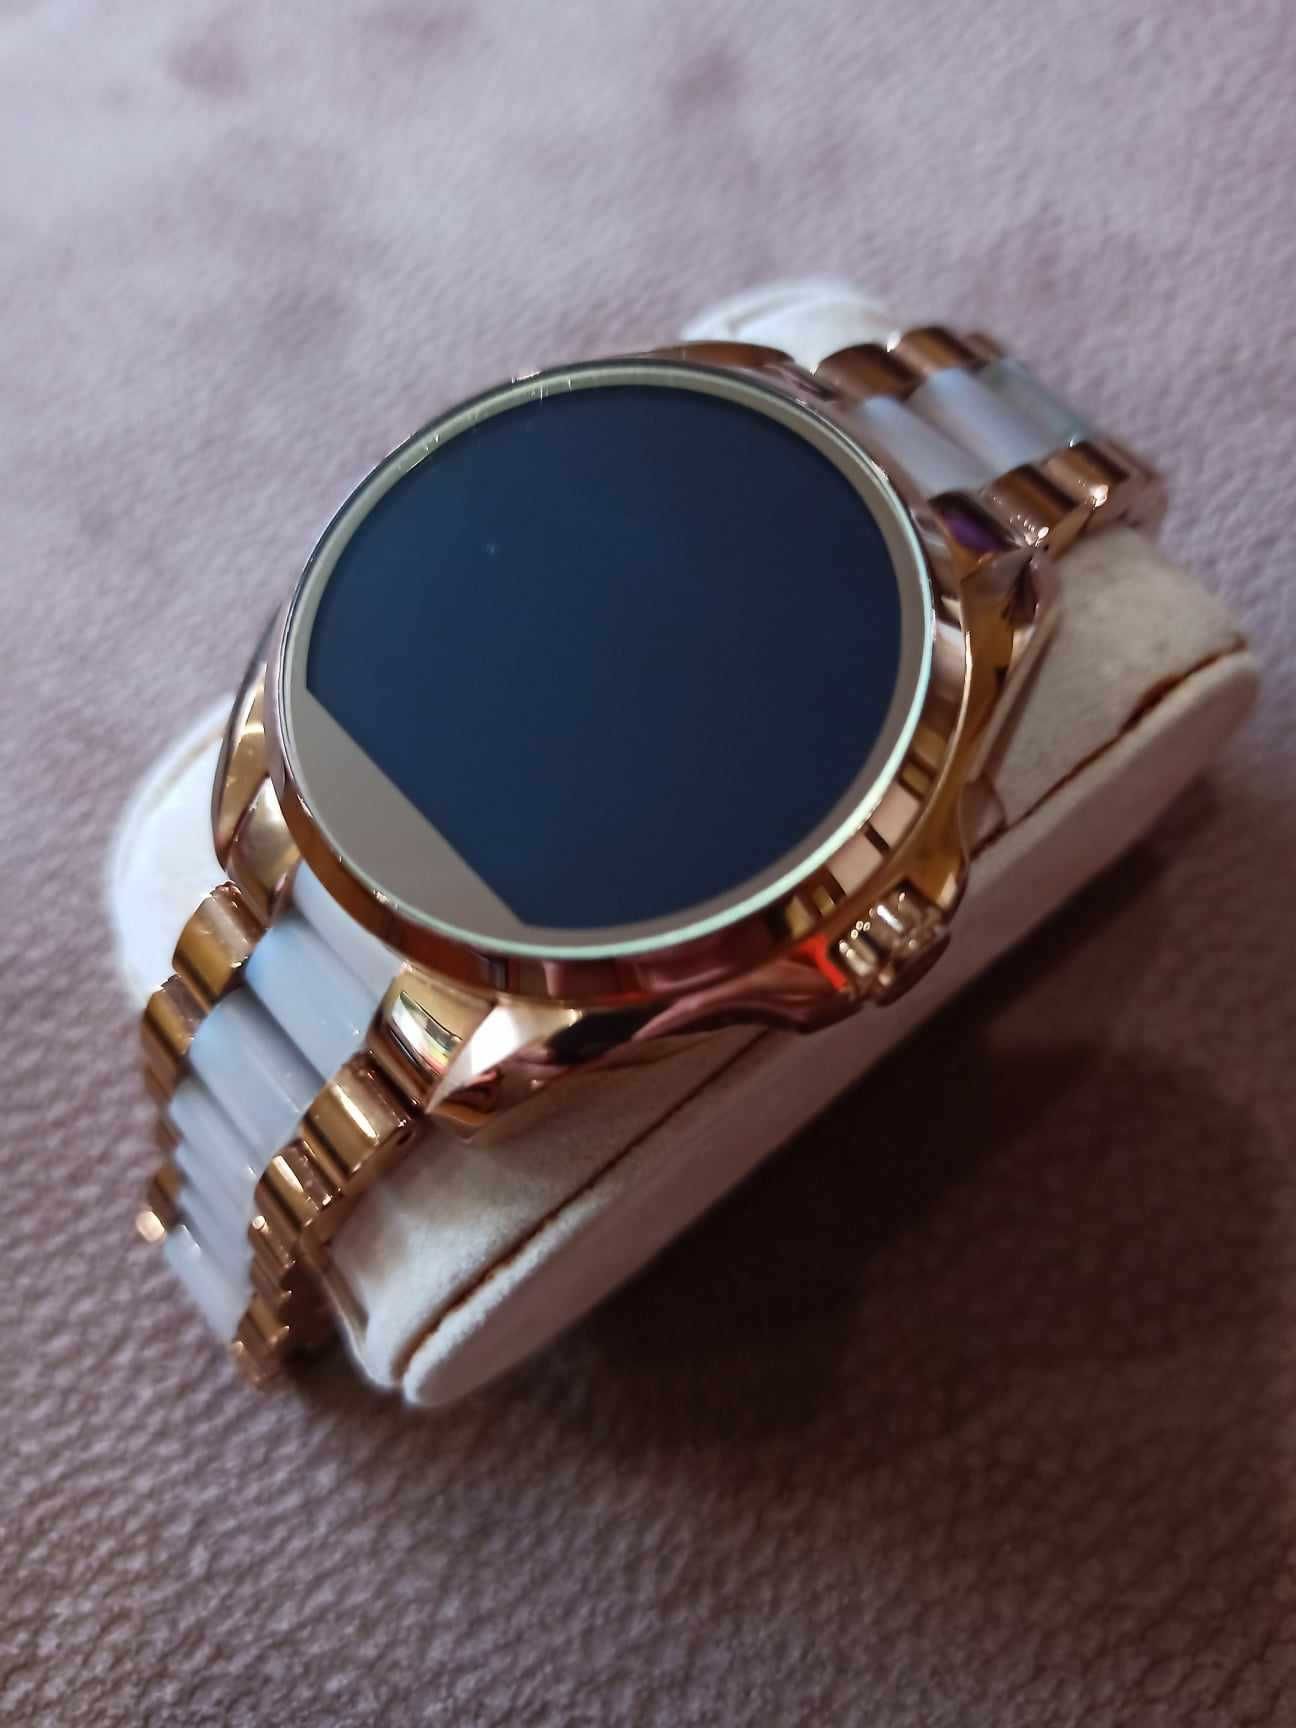 Relógio Smart Watch Michael Kors Original, em excelente estado.